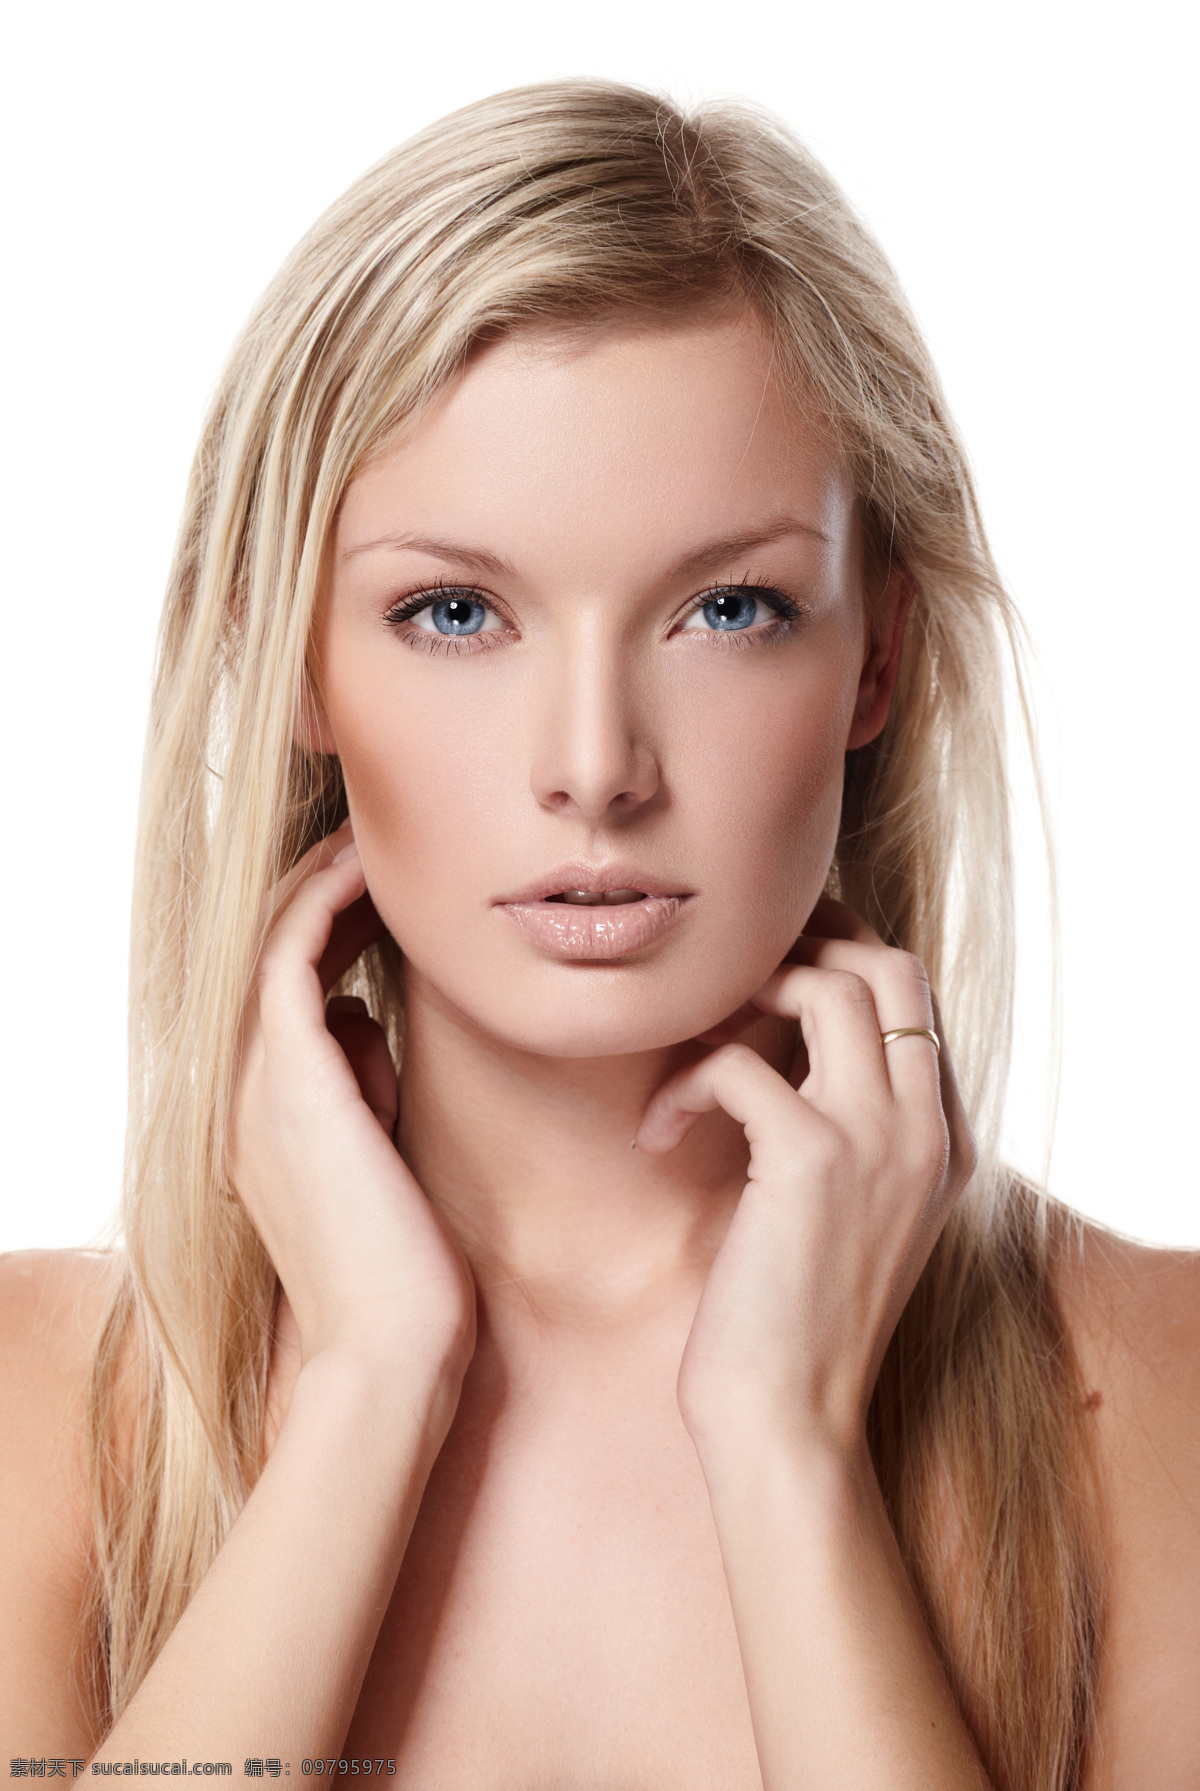 美容 化妆品 广告模特 美女图片 外国女性 女人 性感美女 时尚美女 美容护肤 化妆 肌肤白皙 皮肤美白 美容健身 生活百科